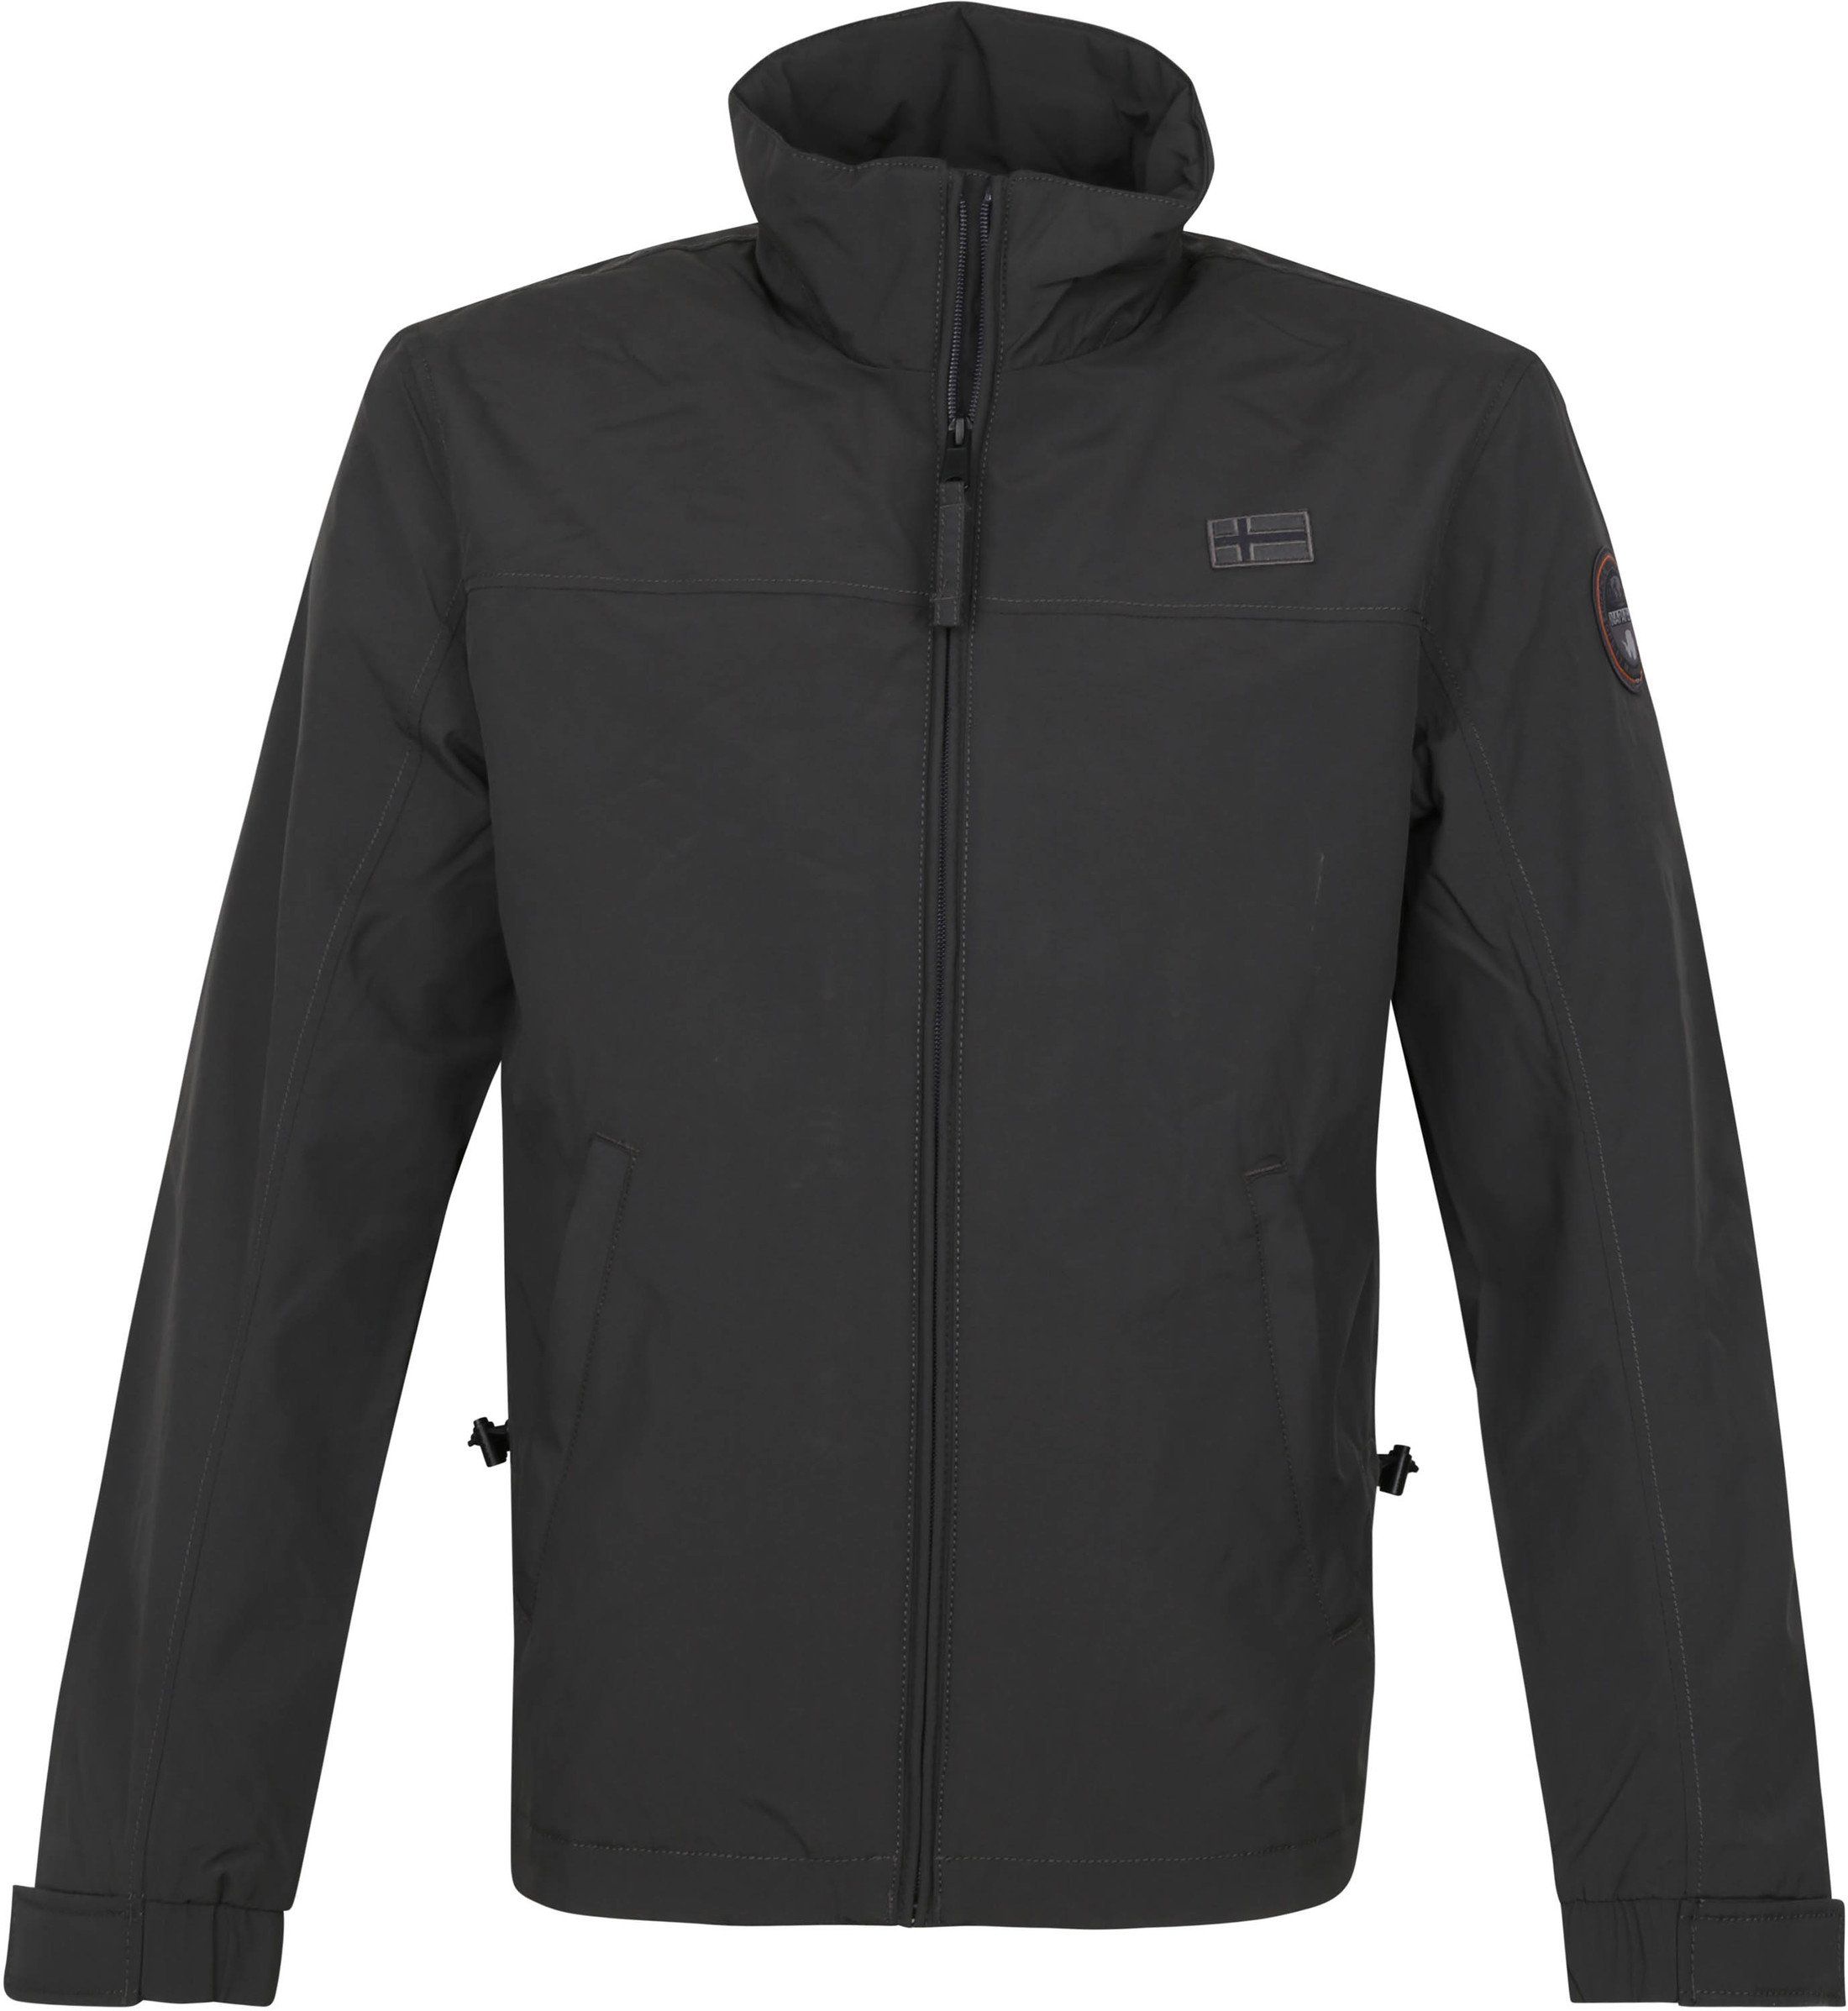 Napapijri Jacket Shelter Antrachite Dark Grey size XL